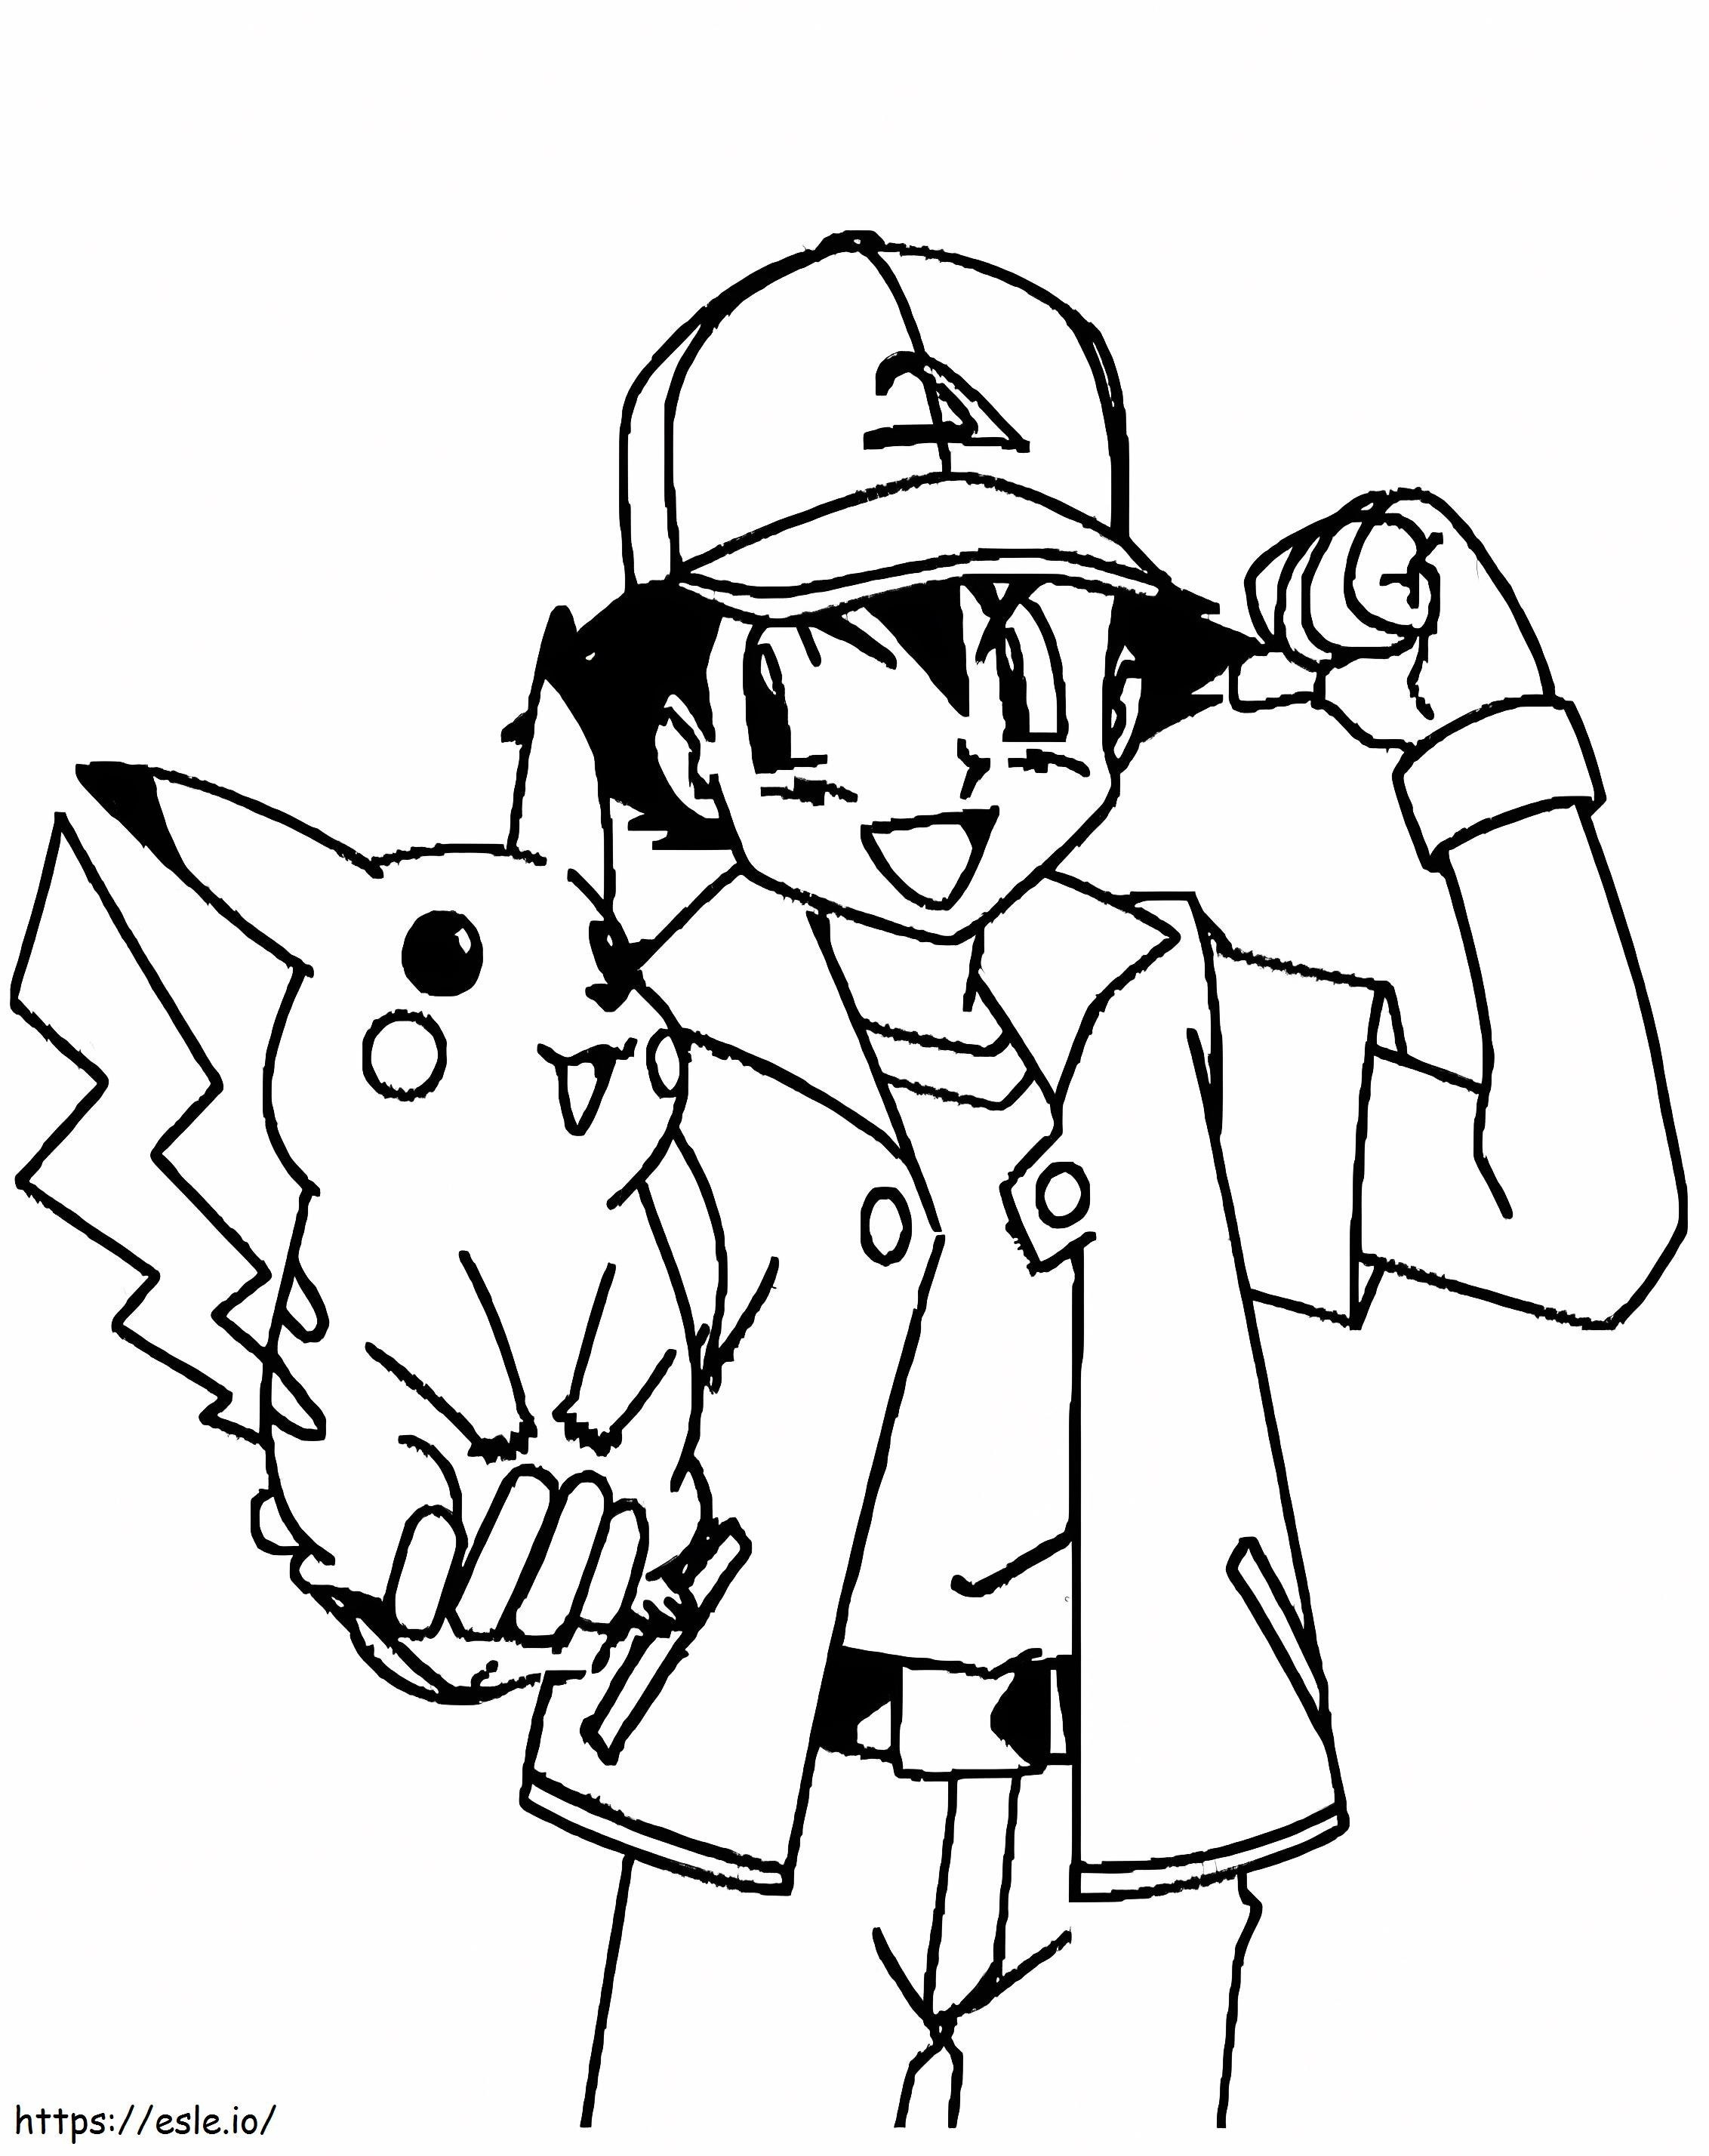 Ash Ketchum trzymający Pikachu kolorowanka